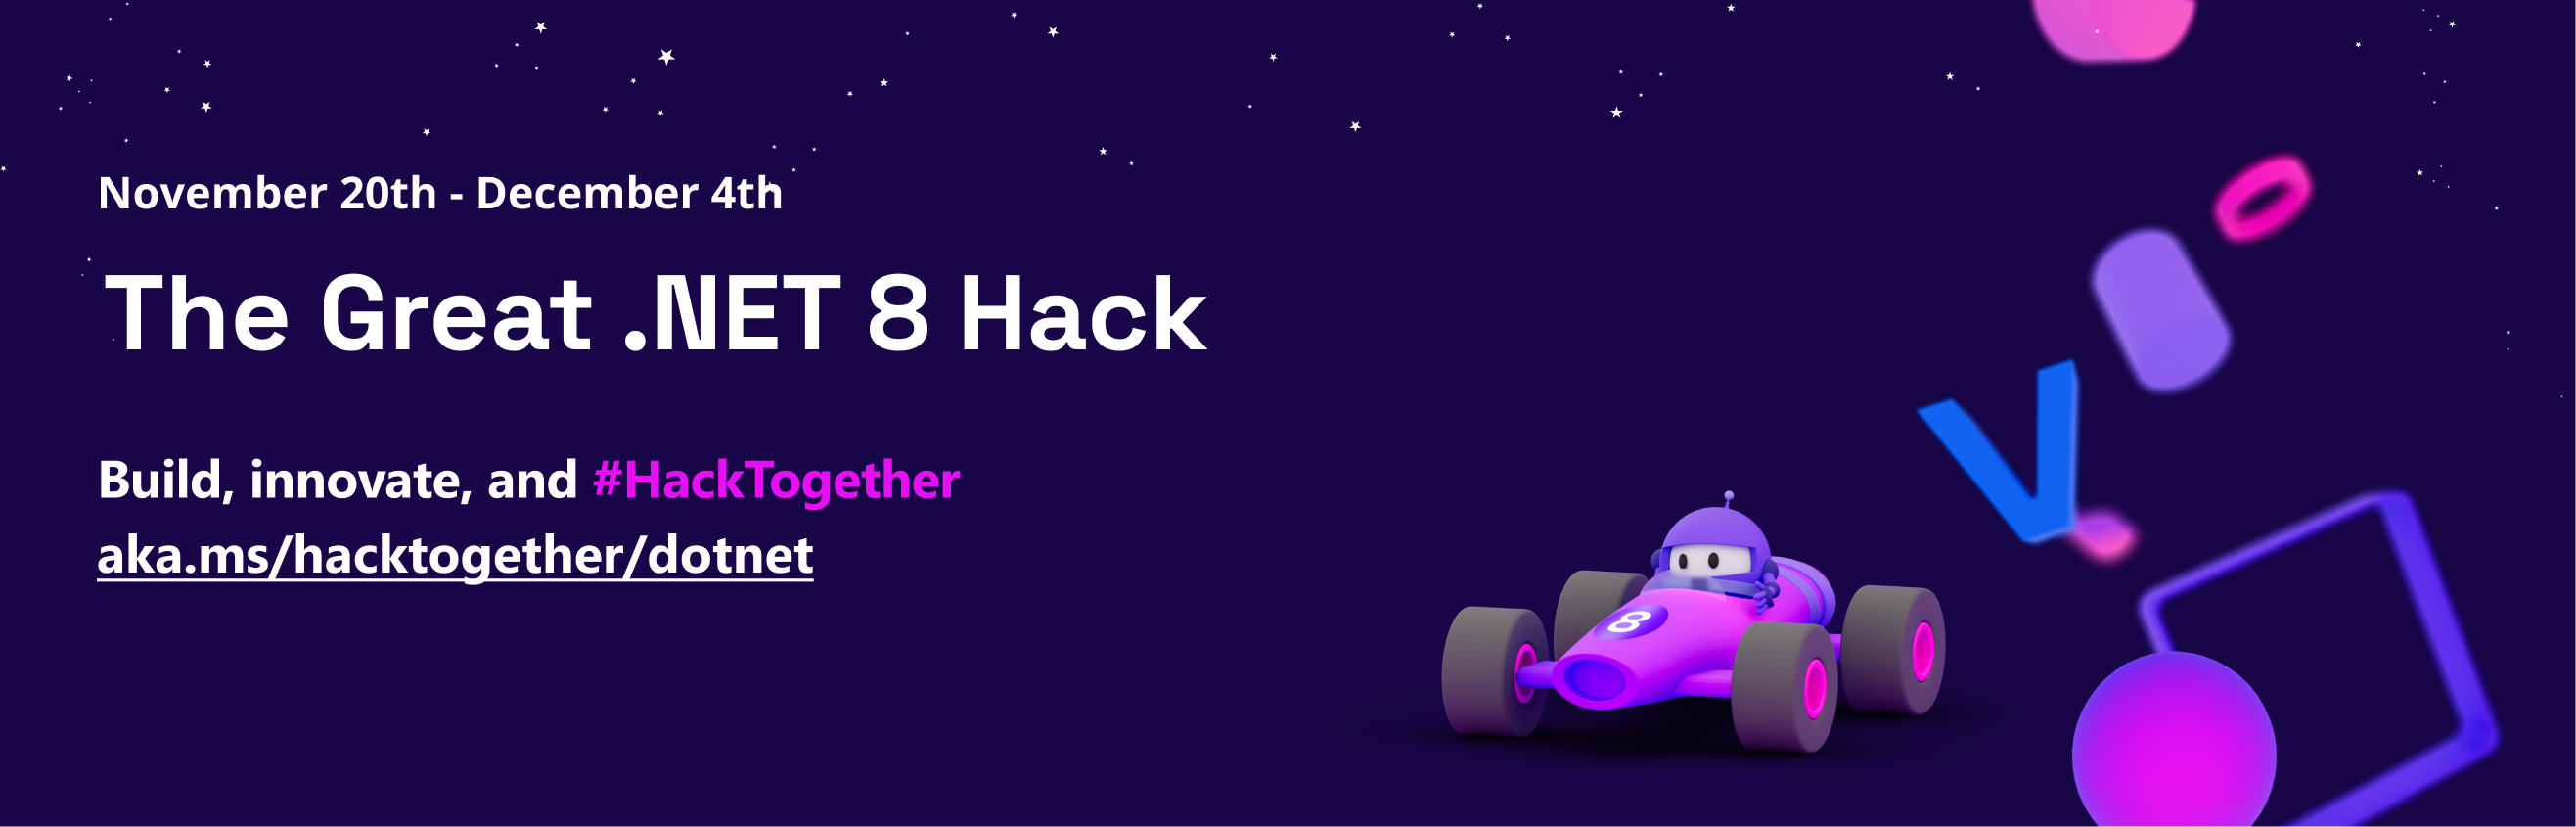 Great .NET 8 Hack